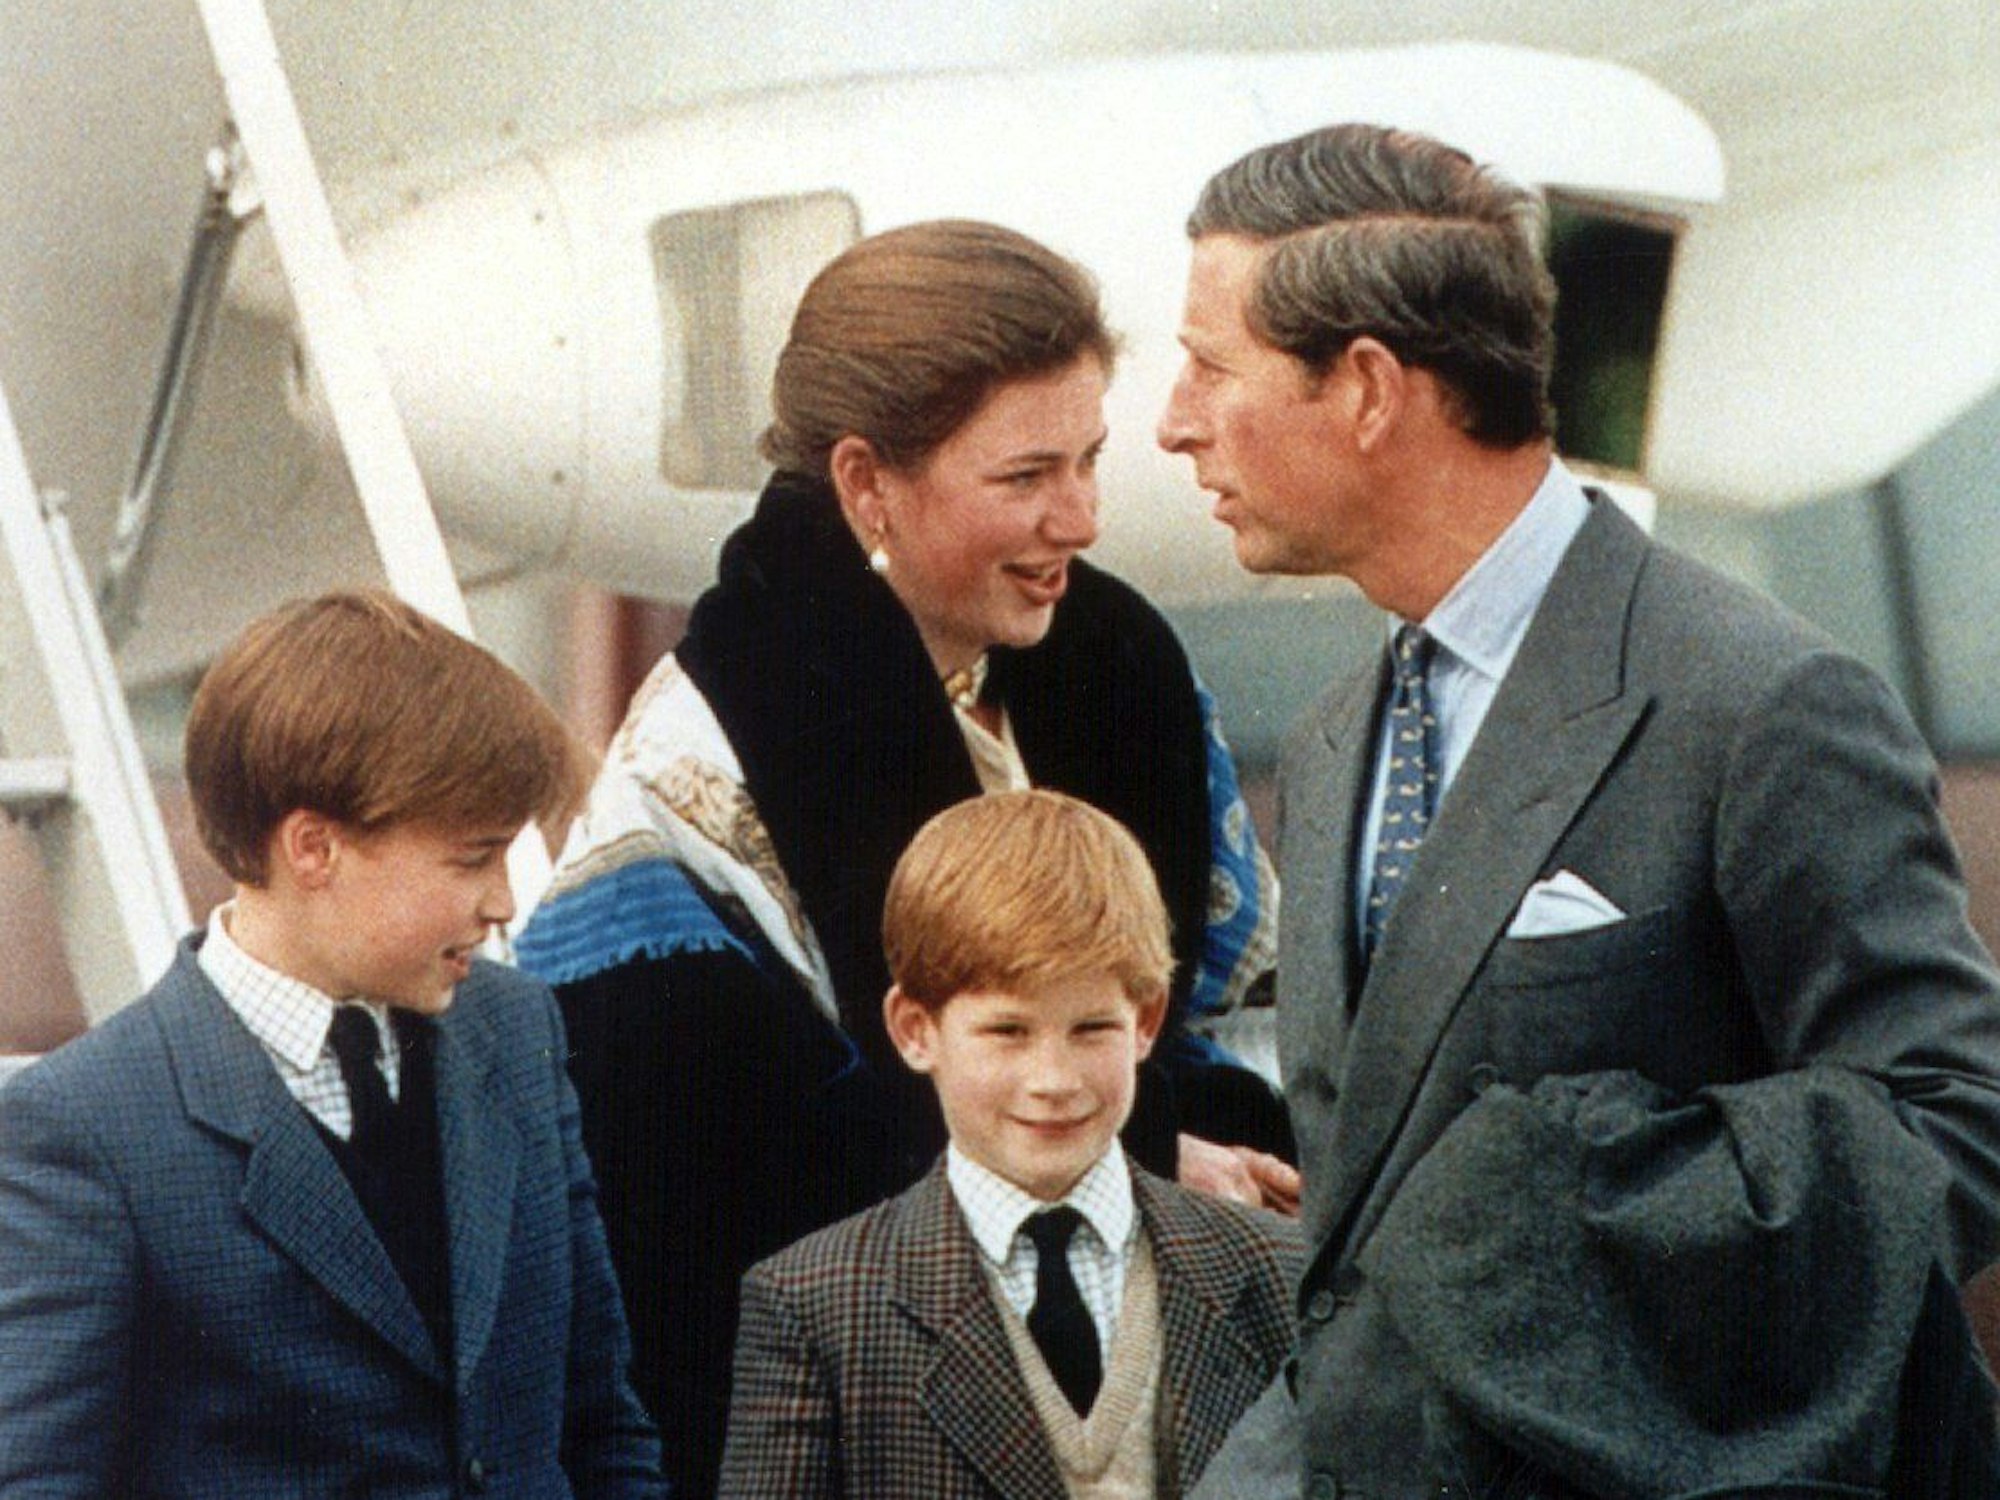 Das Kindermädchen der Prinzen William (l) und Harry, Tiggy Legge-Bourke, am 17.2.1994 mit Prinz Charles auf dem Flughafen in Zürich.